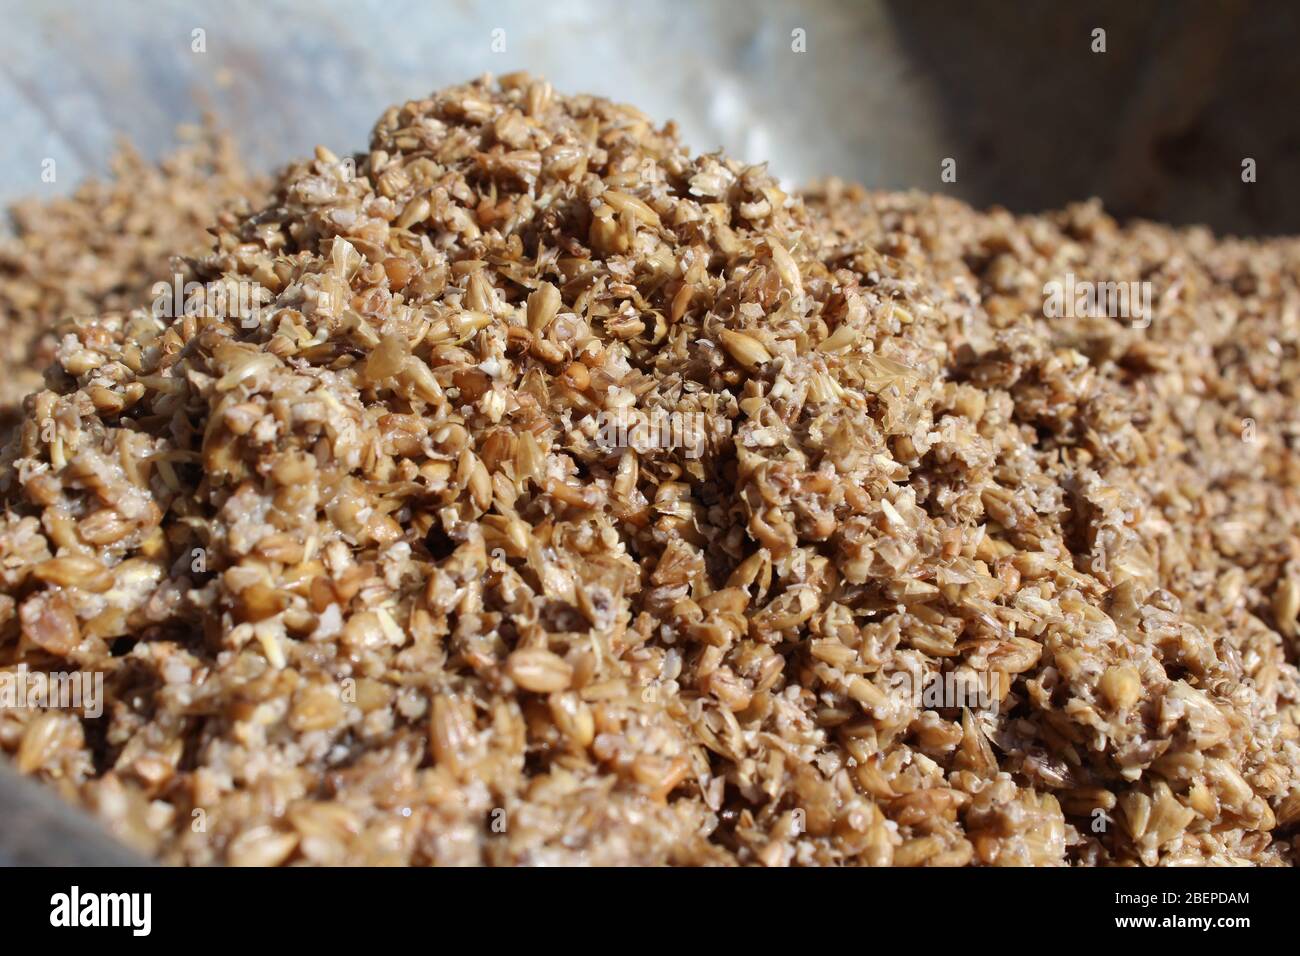 Nahaufnahme von nass verbrauchten Malzkörnern, dem Restprodukt, das während des Bierbrauprozesses produziert wird. Stockfoto